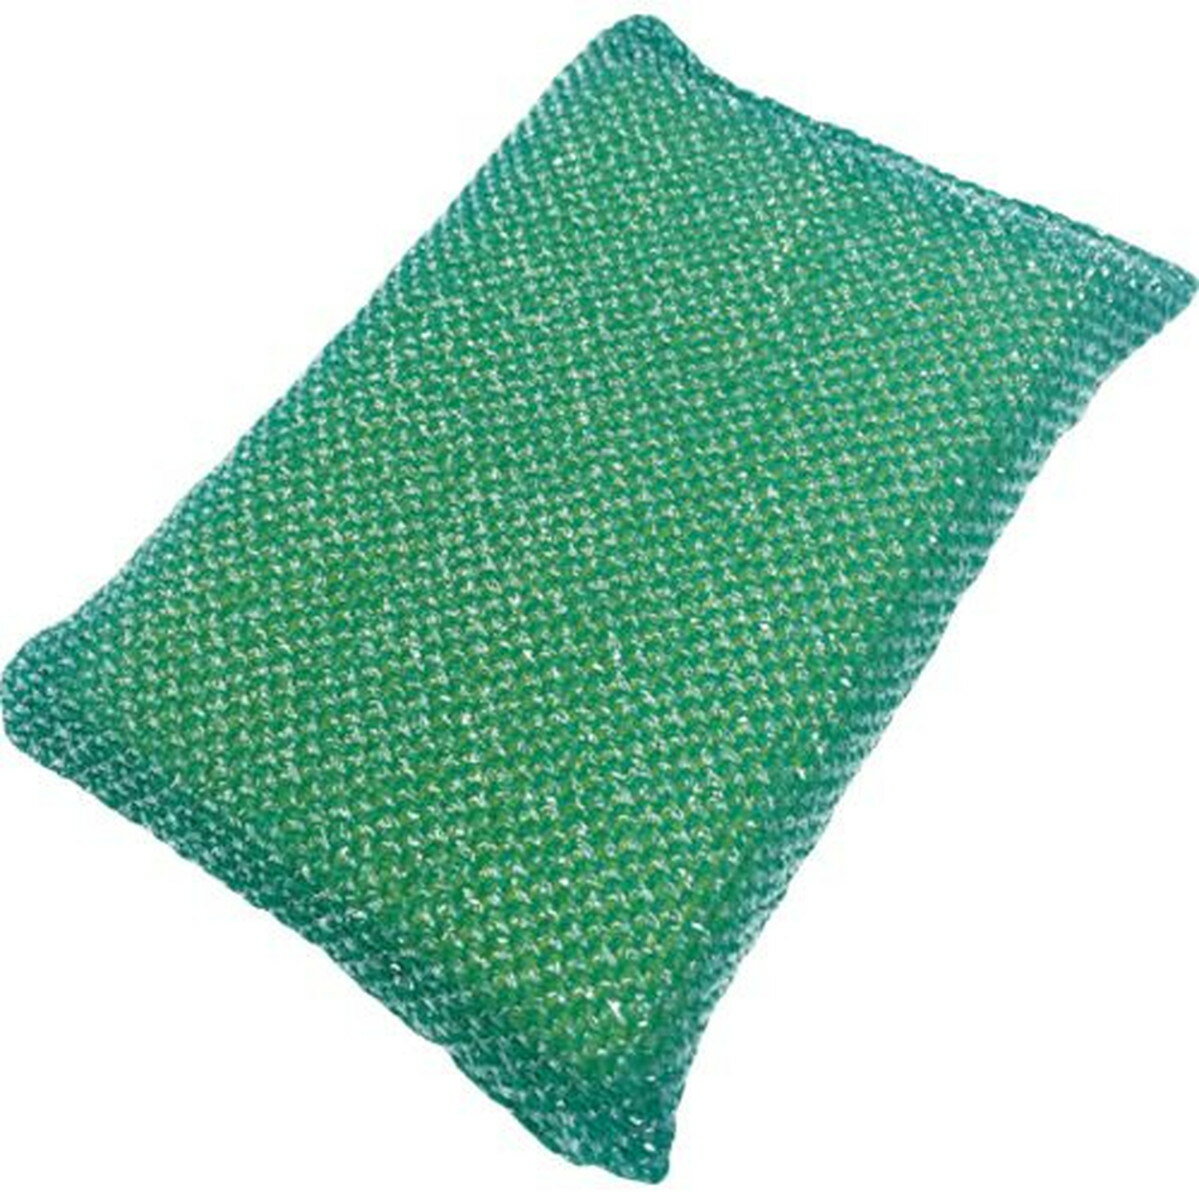 キクロン キクロンプロ タフネット 薄型 緑 1個 (N-301)